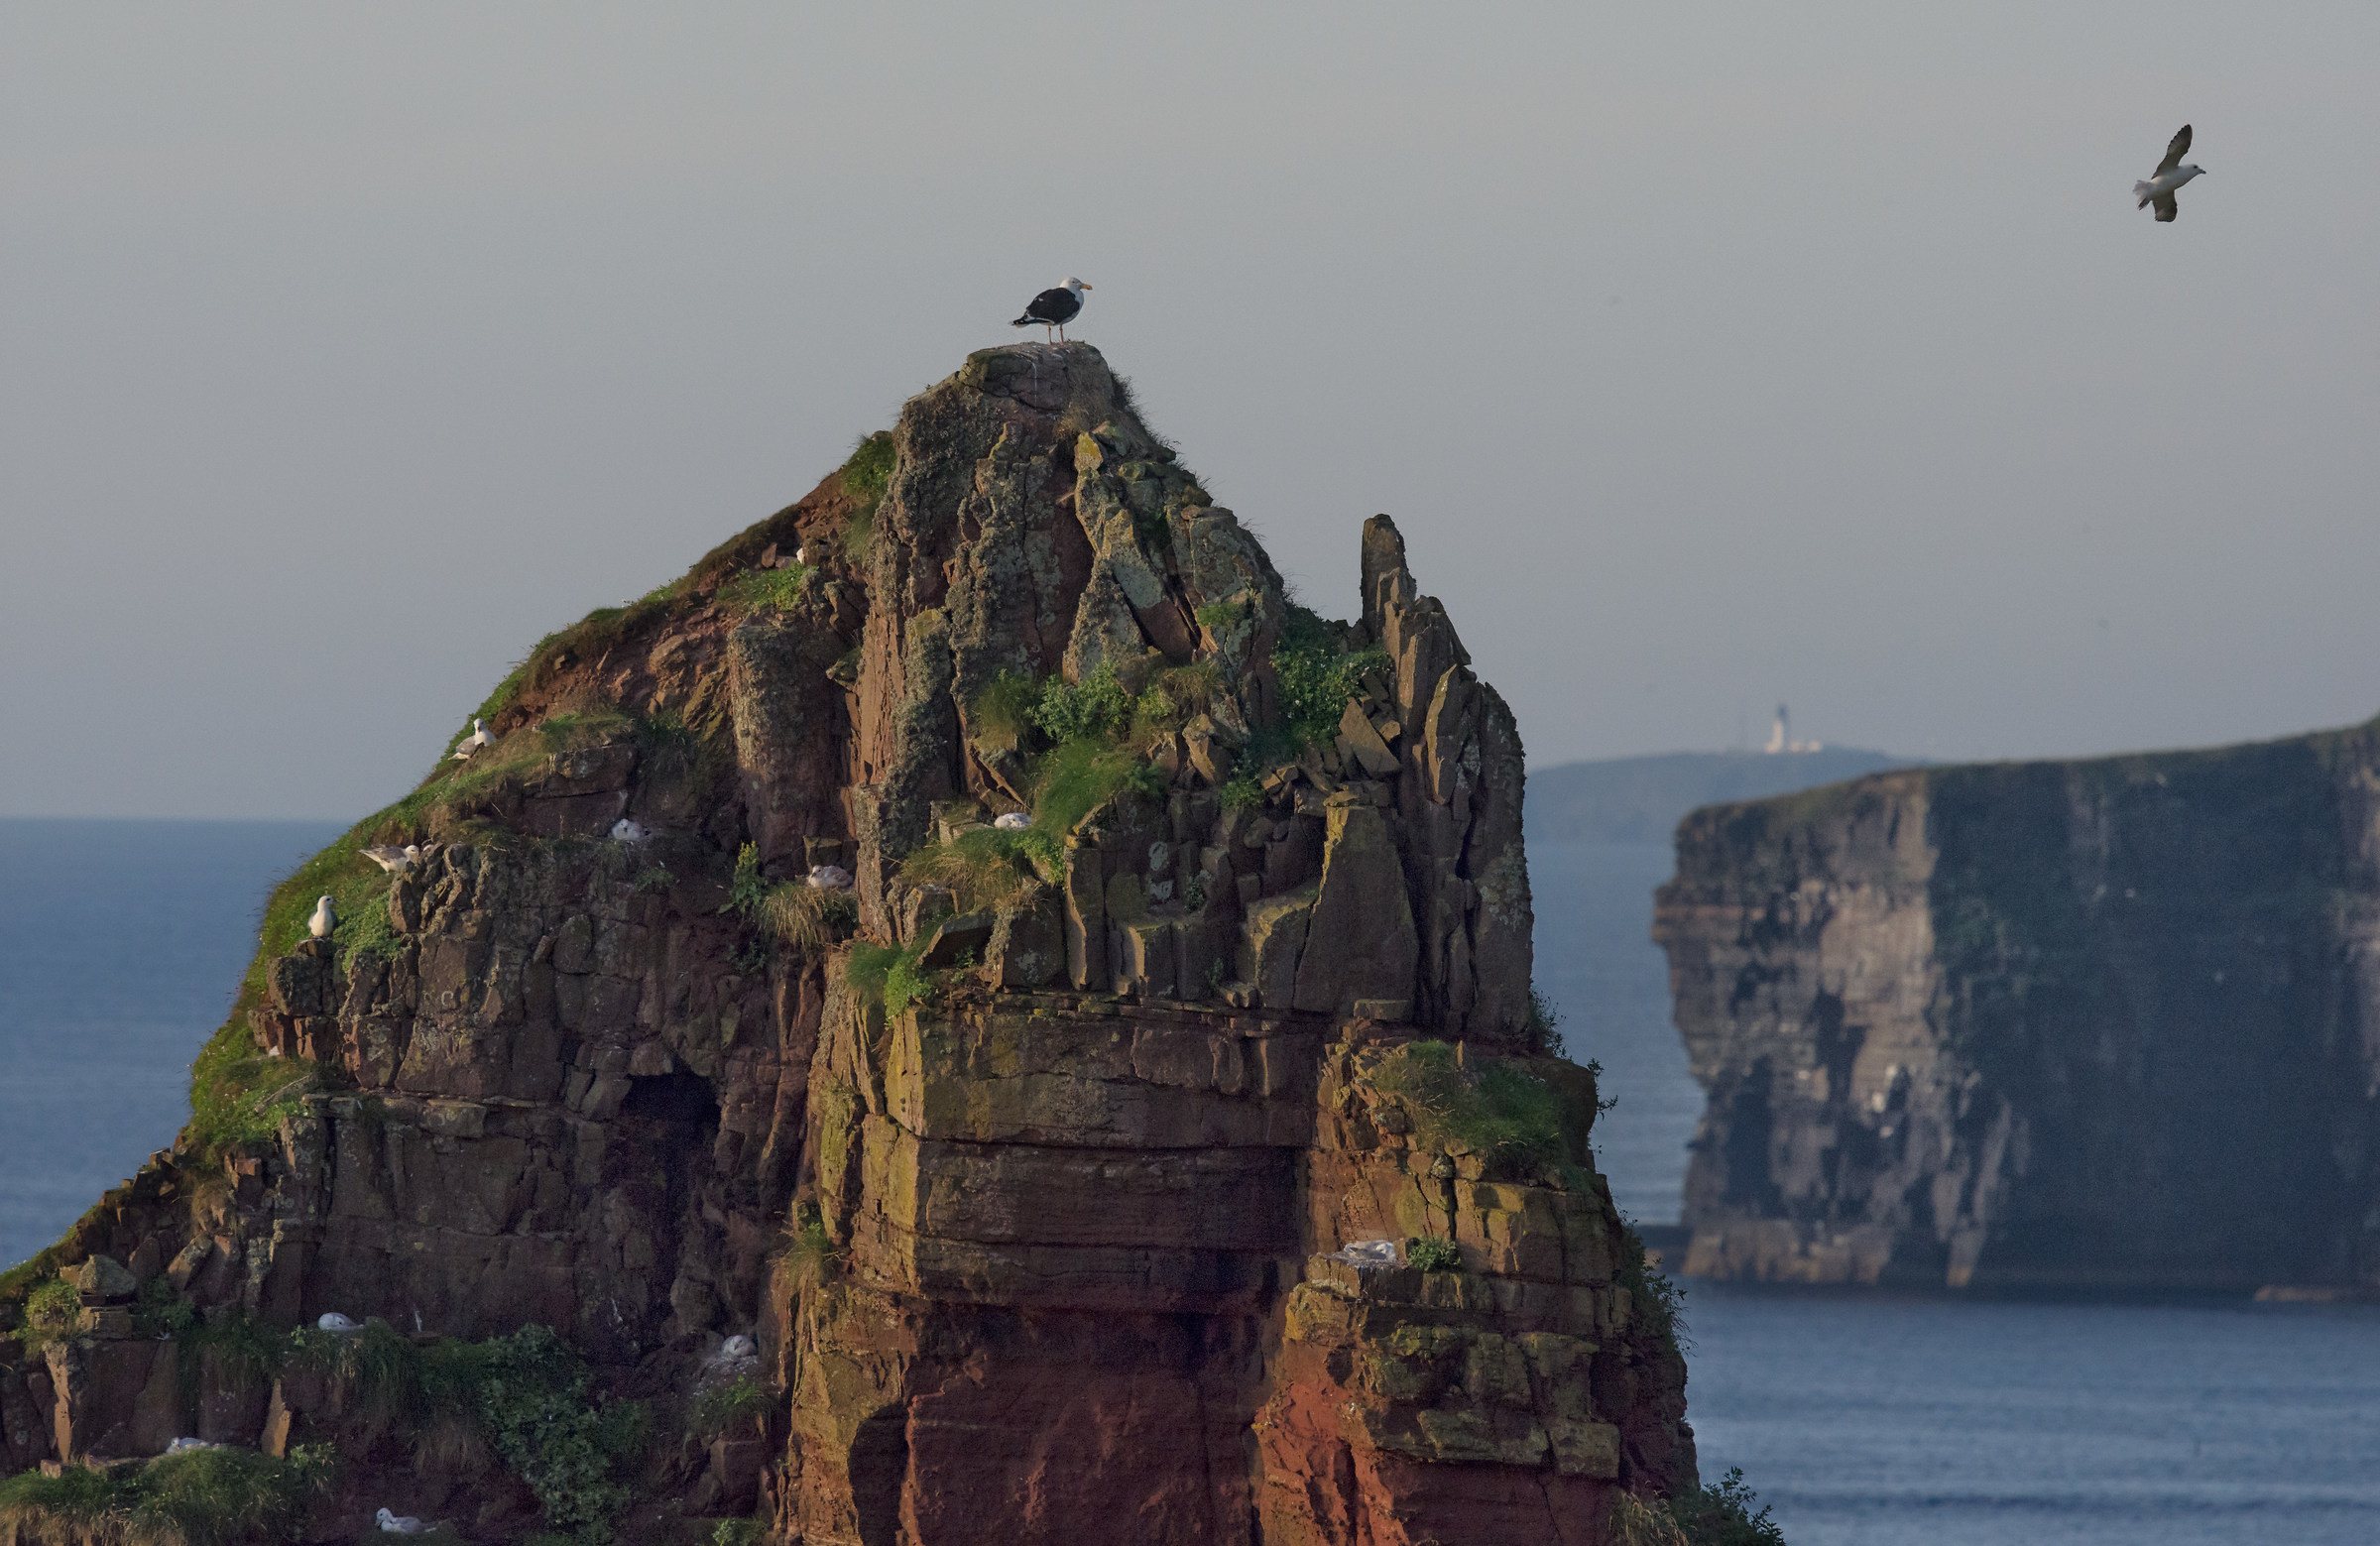 Sea gull colony, Scotland...